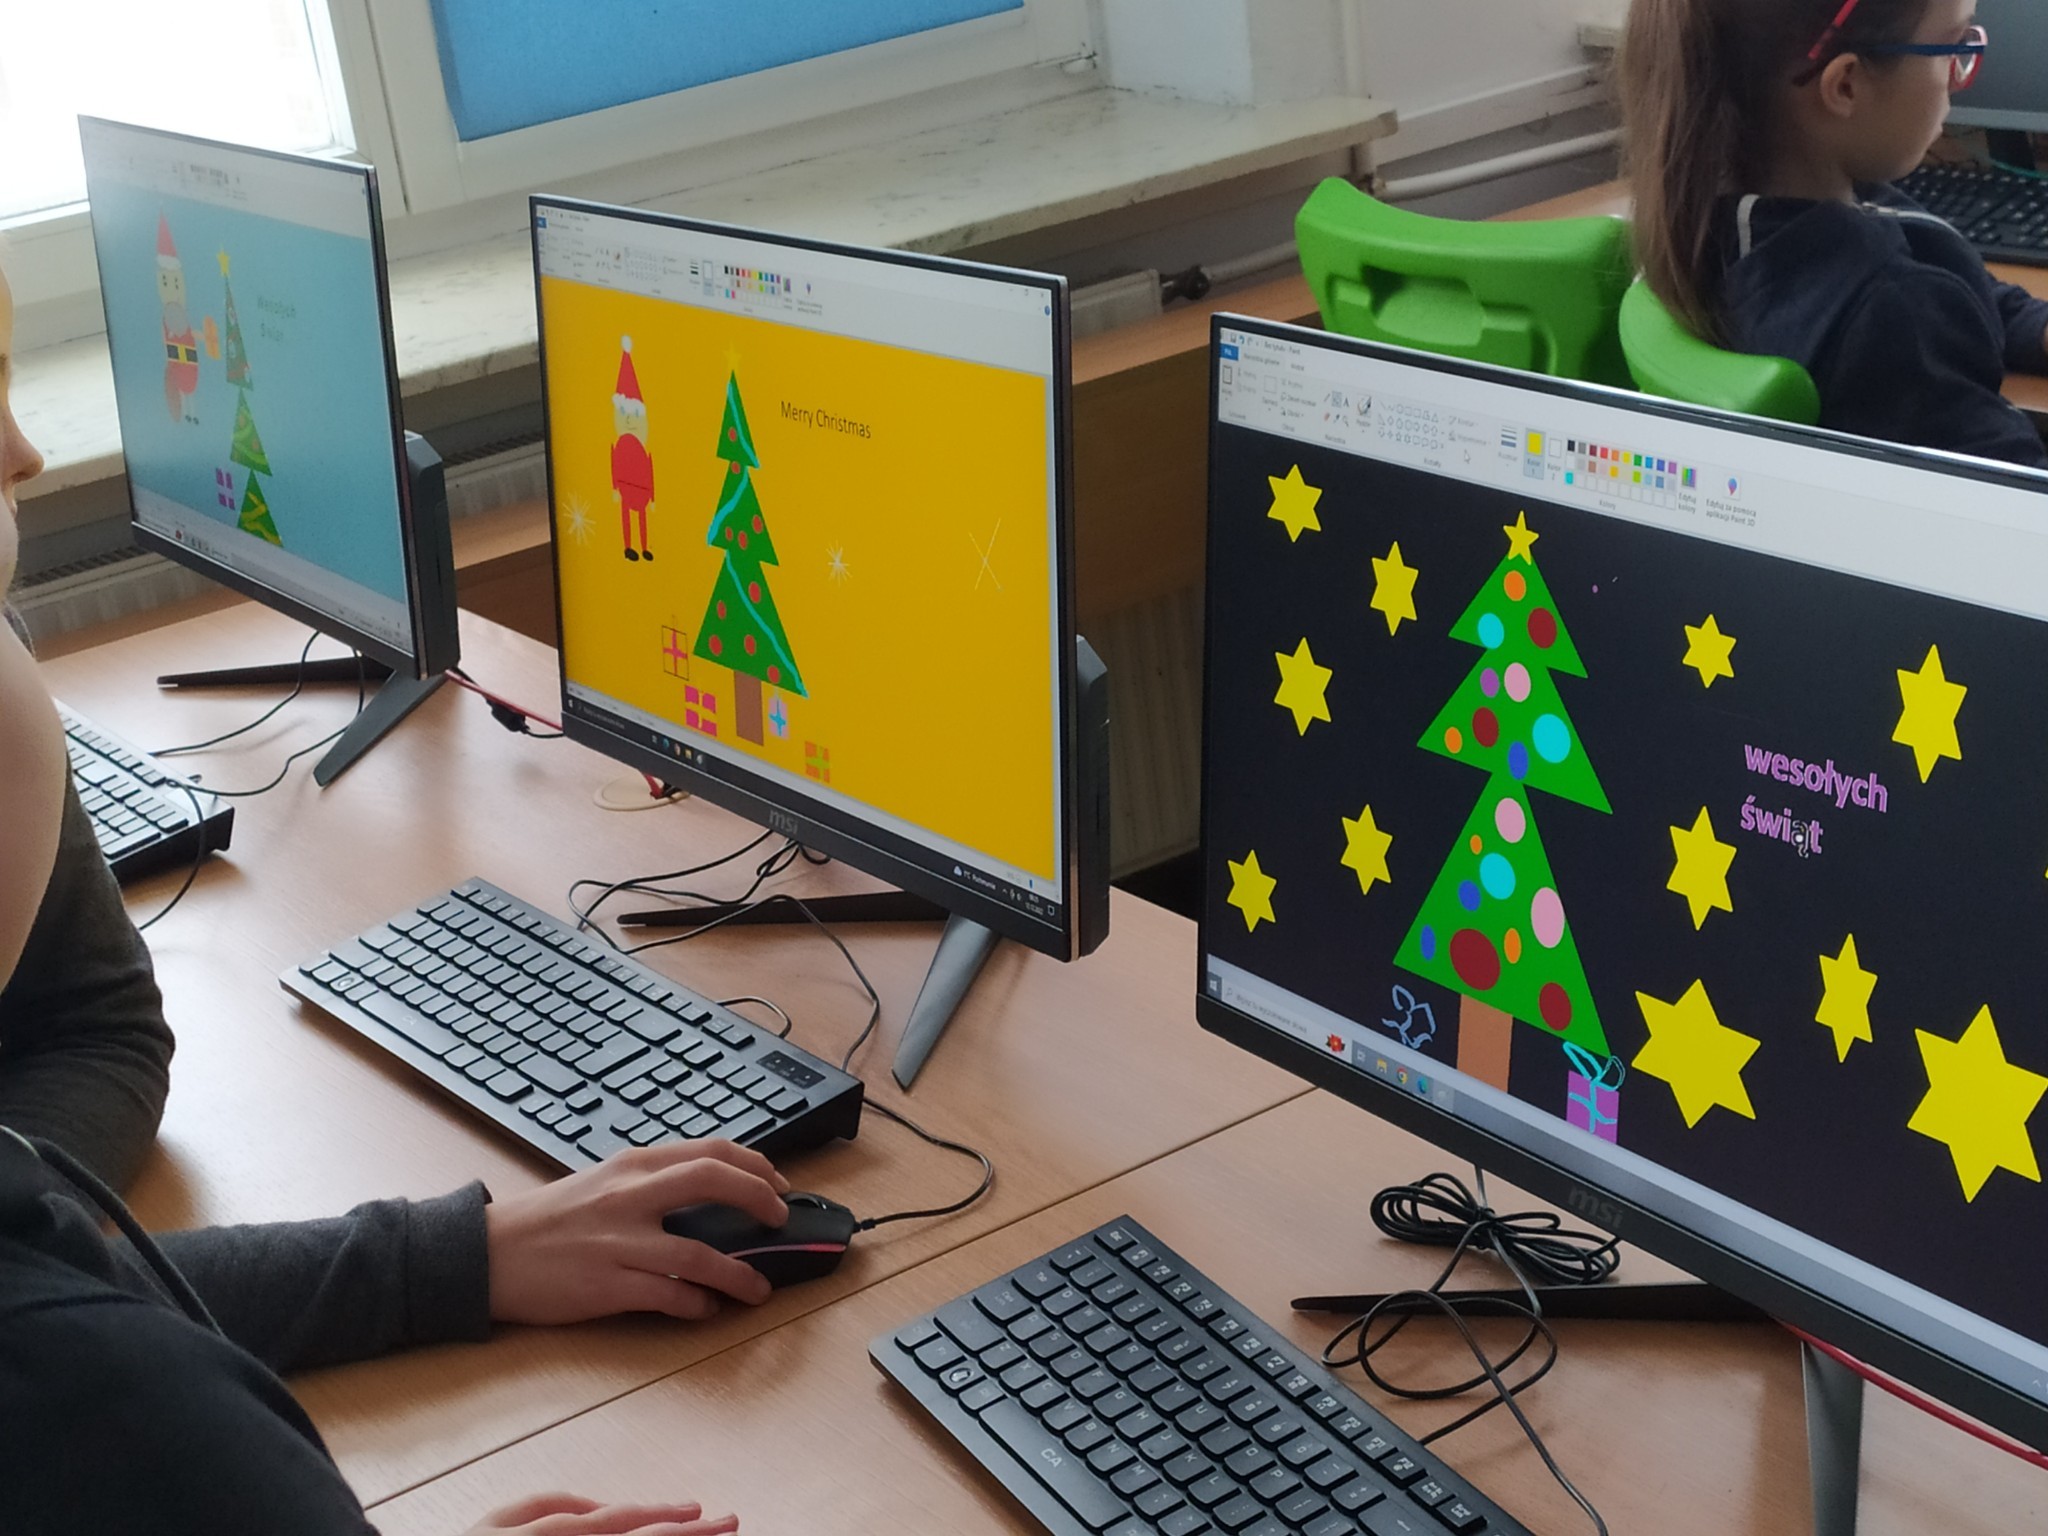 monitory z kartkami świątecznymi zrobionymi przez dzieci